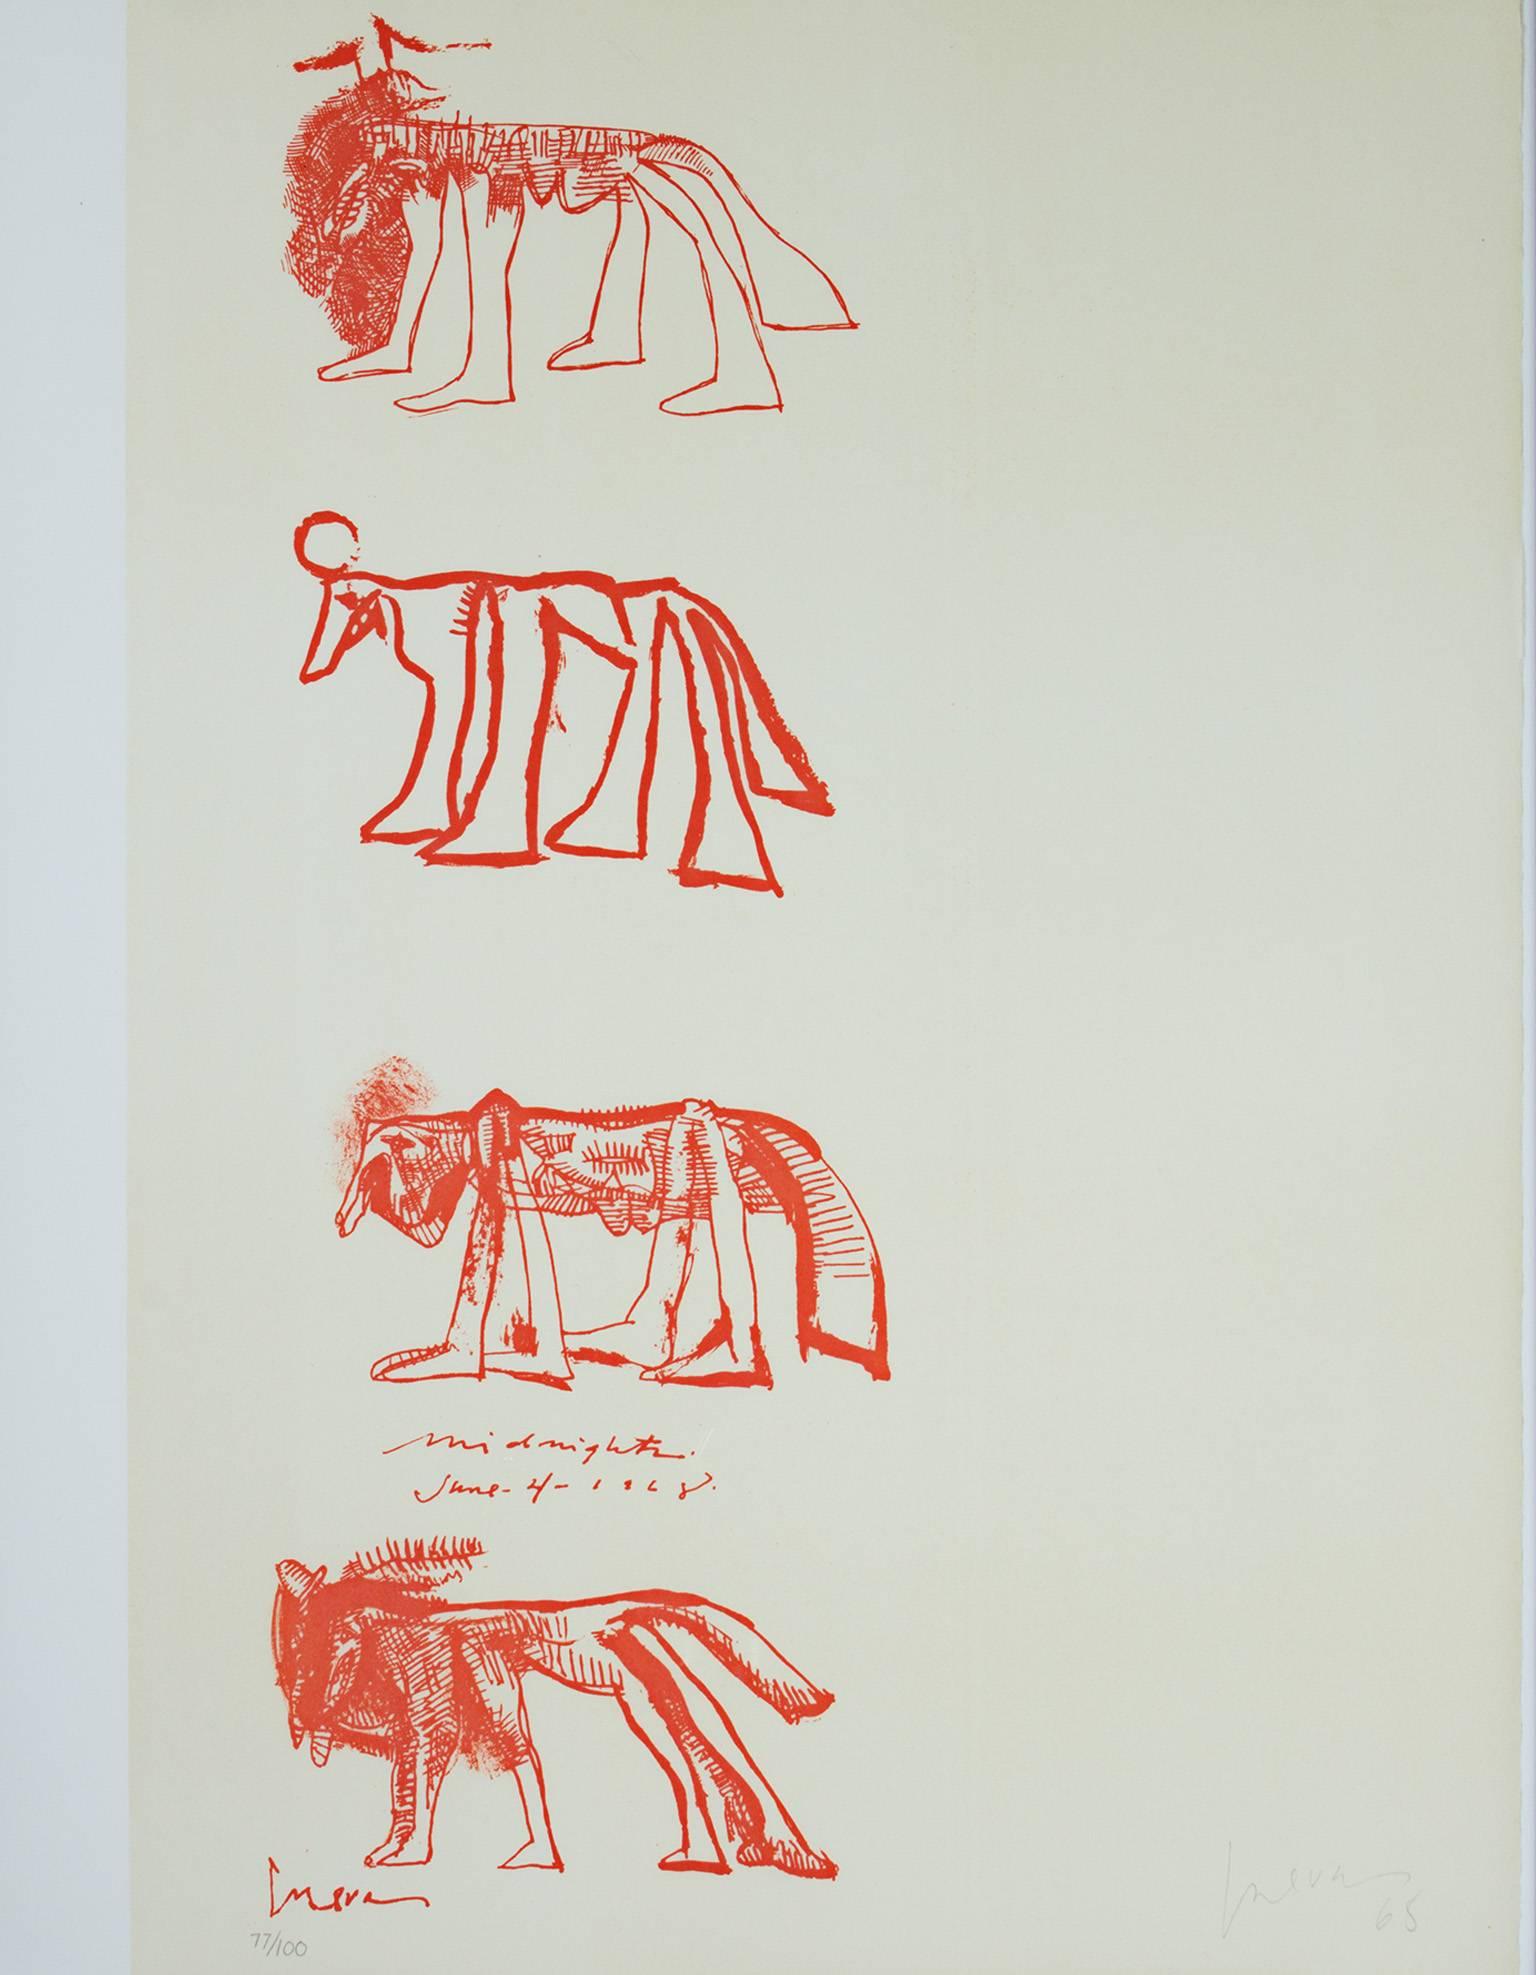 José Luis Cuevas Animal Print - "Four Animals, " Color Lithograph signed by Jose Luis Cuevas